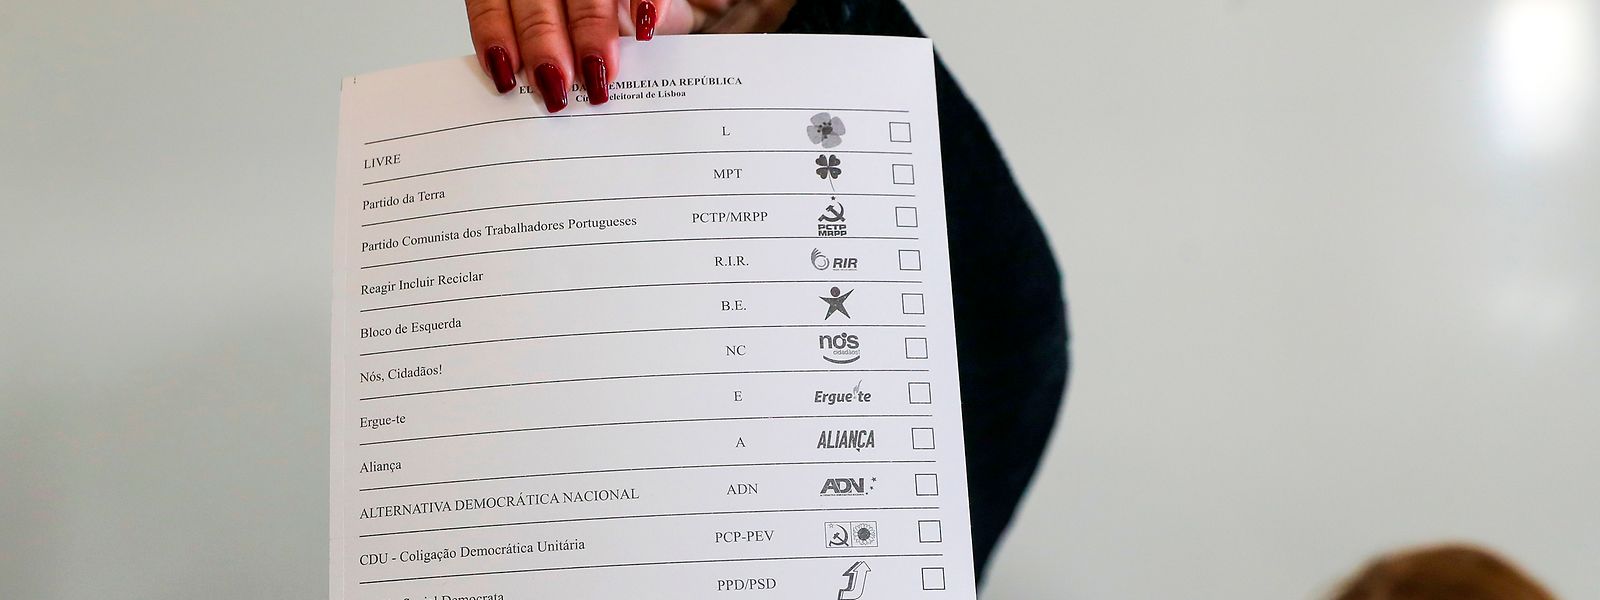 Boletim de voto com os nomes concorrentes às eleições legislativas 2022.